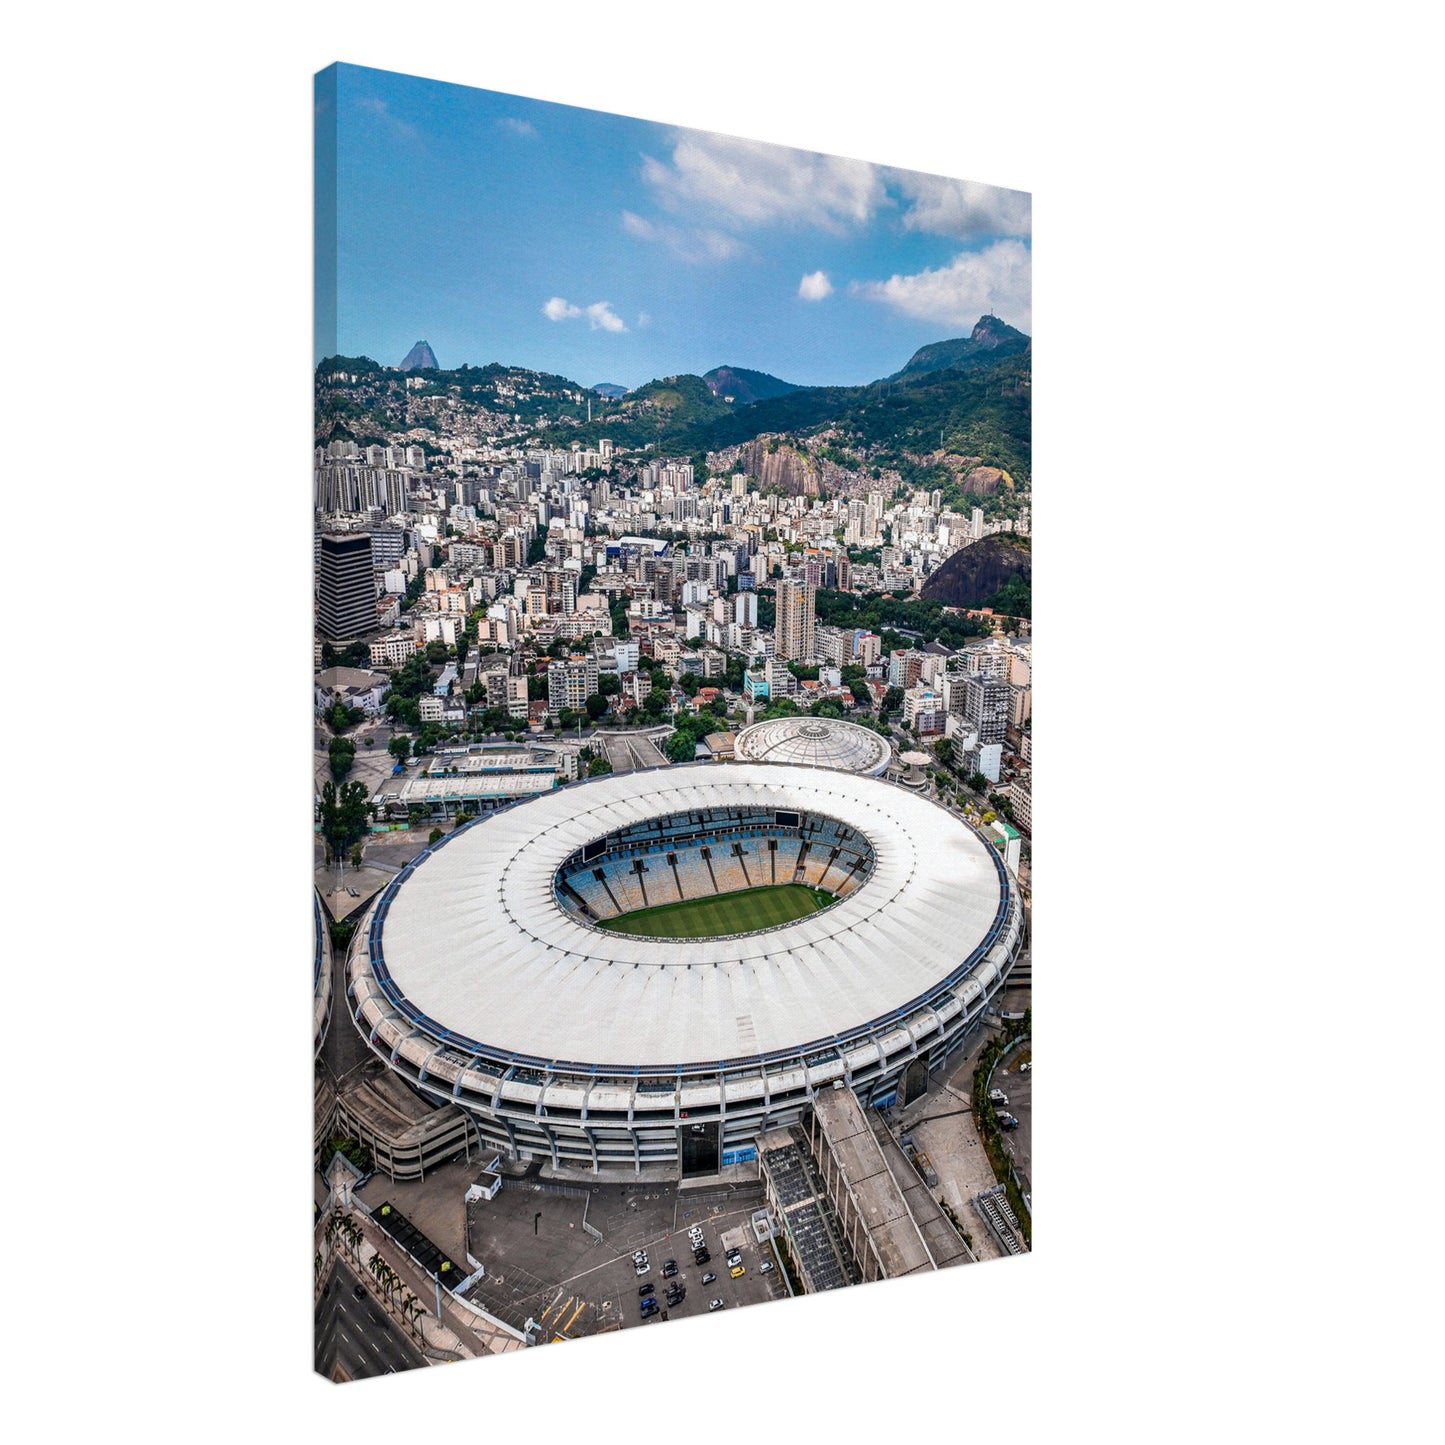 Estádio do Maracanã, Rio de Janeiro Stadium Canvas